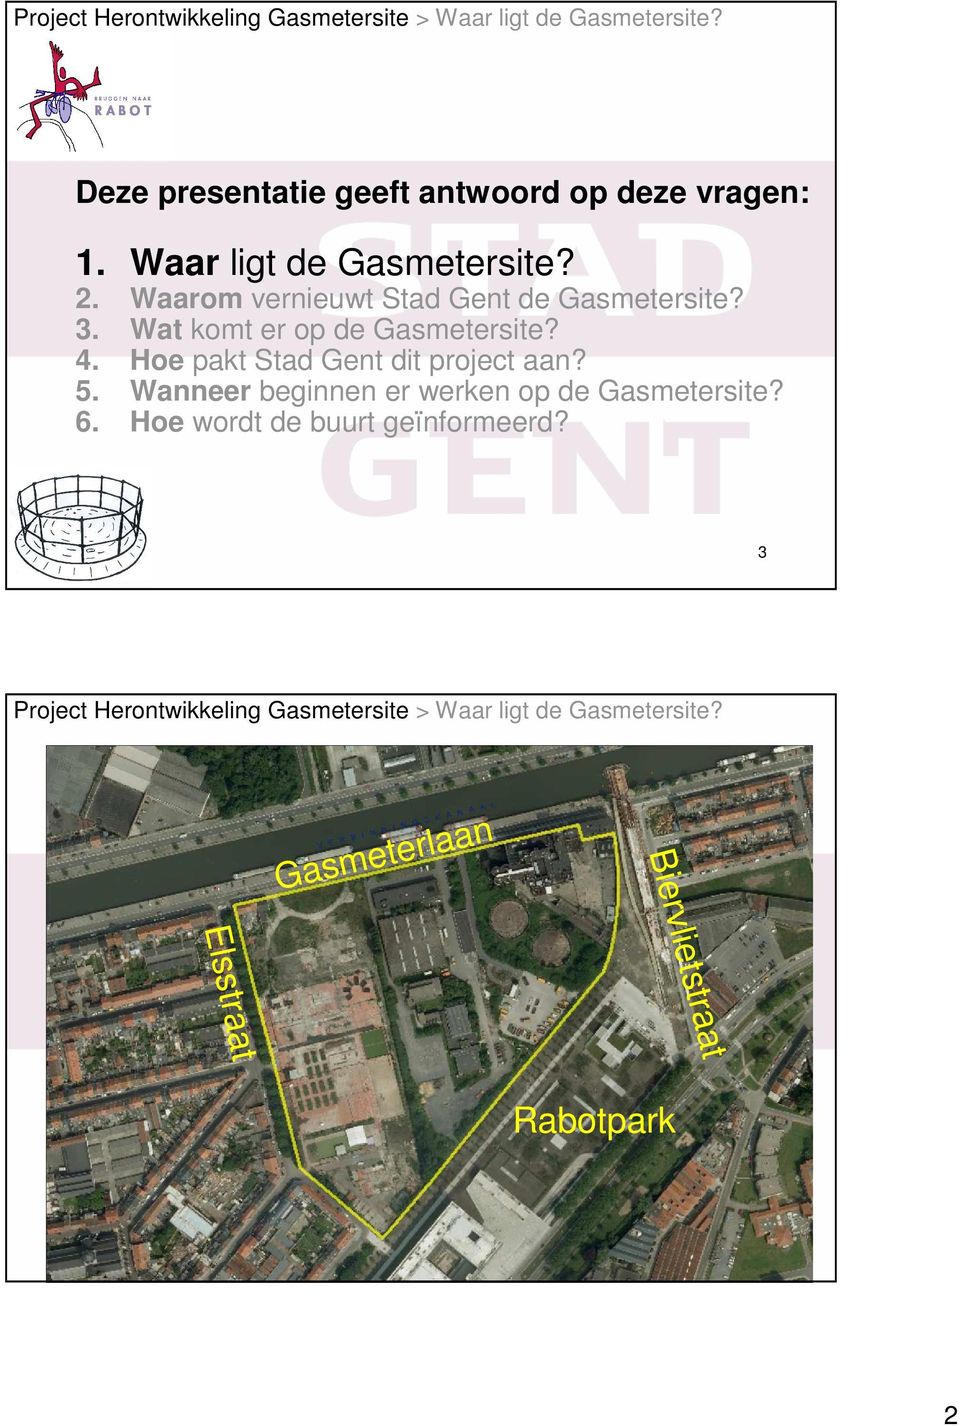 Hoe pakt Stad Gent dit project aan? 5. Wanneer beginnen er werken op de Gasmetersite? 6.